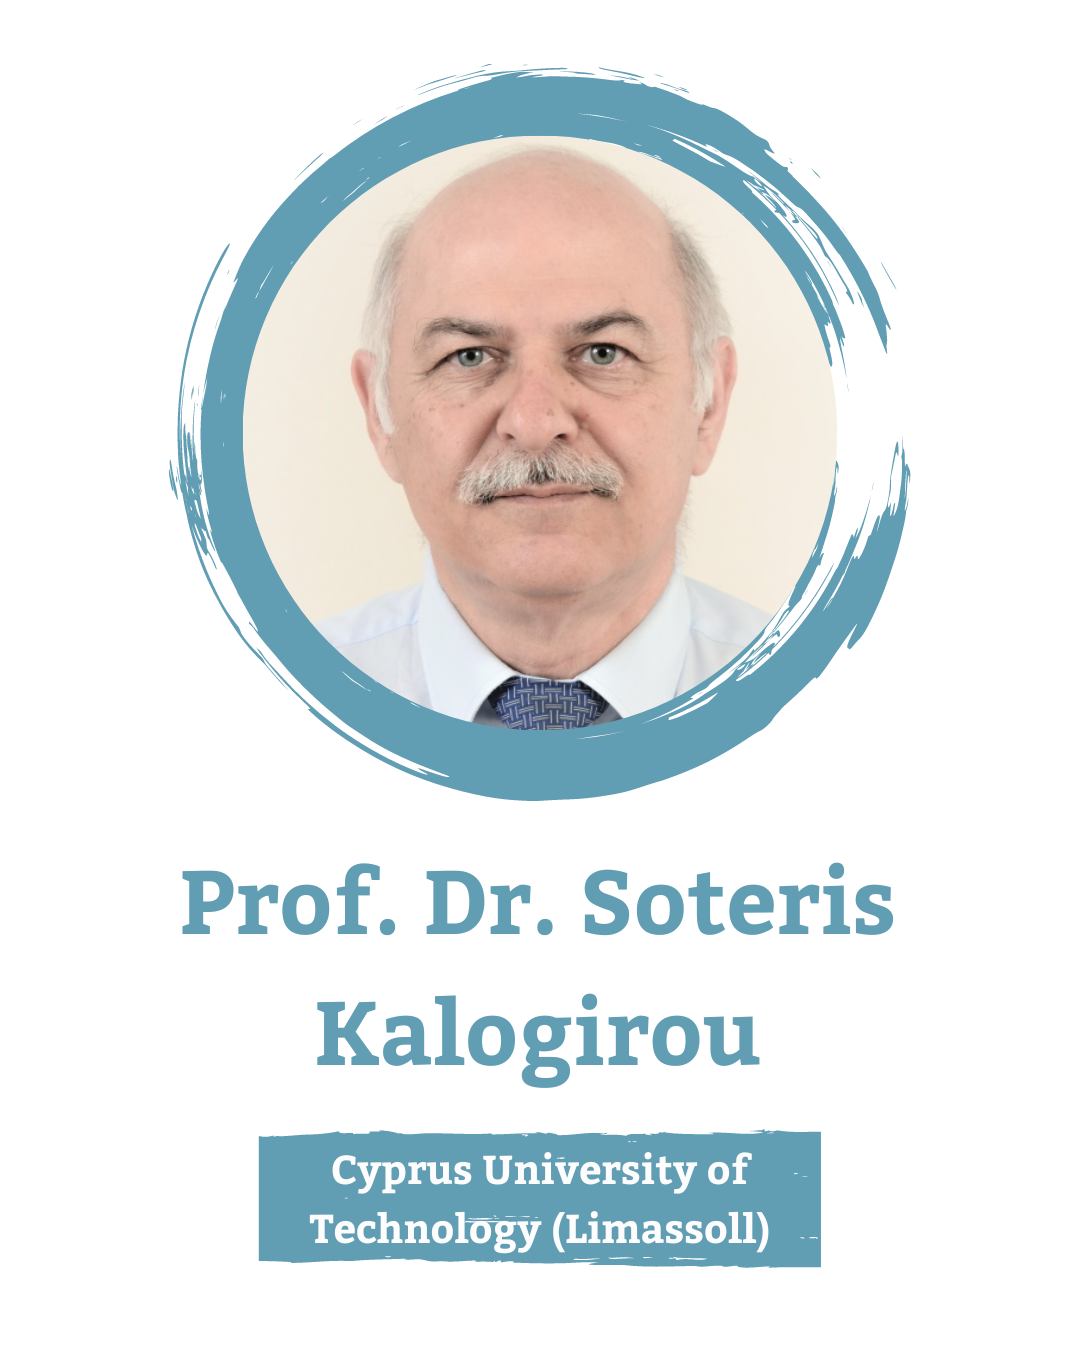 Professor Dr. Soteris Kalogirou